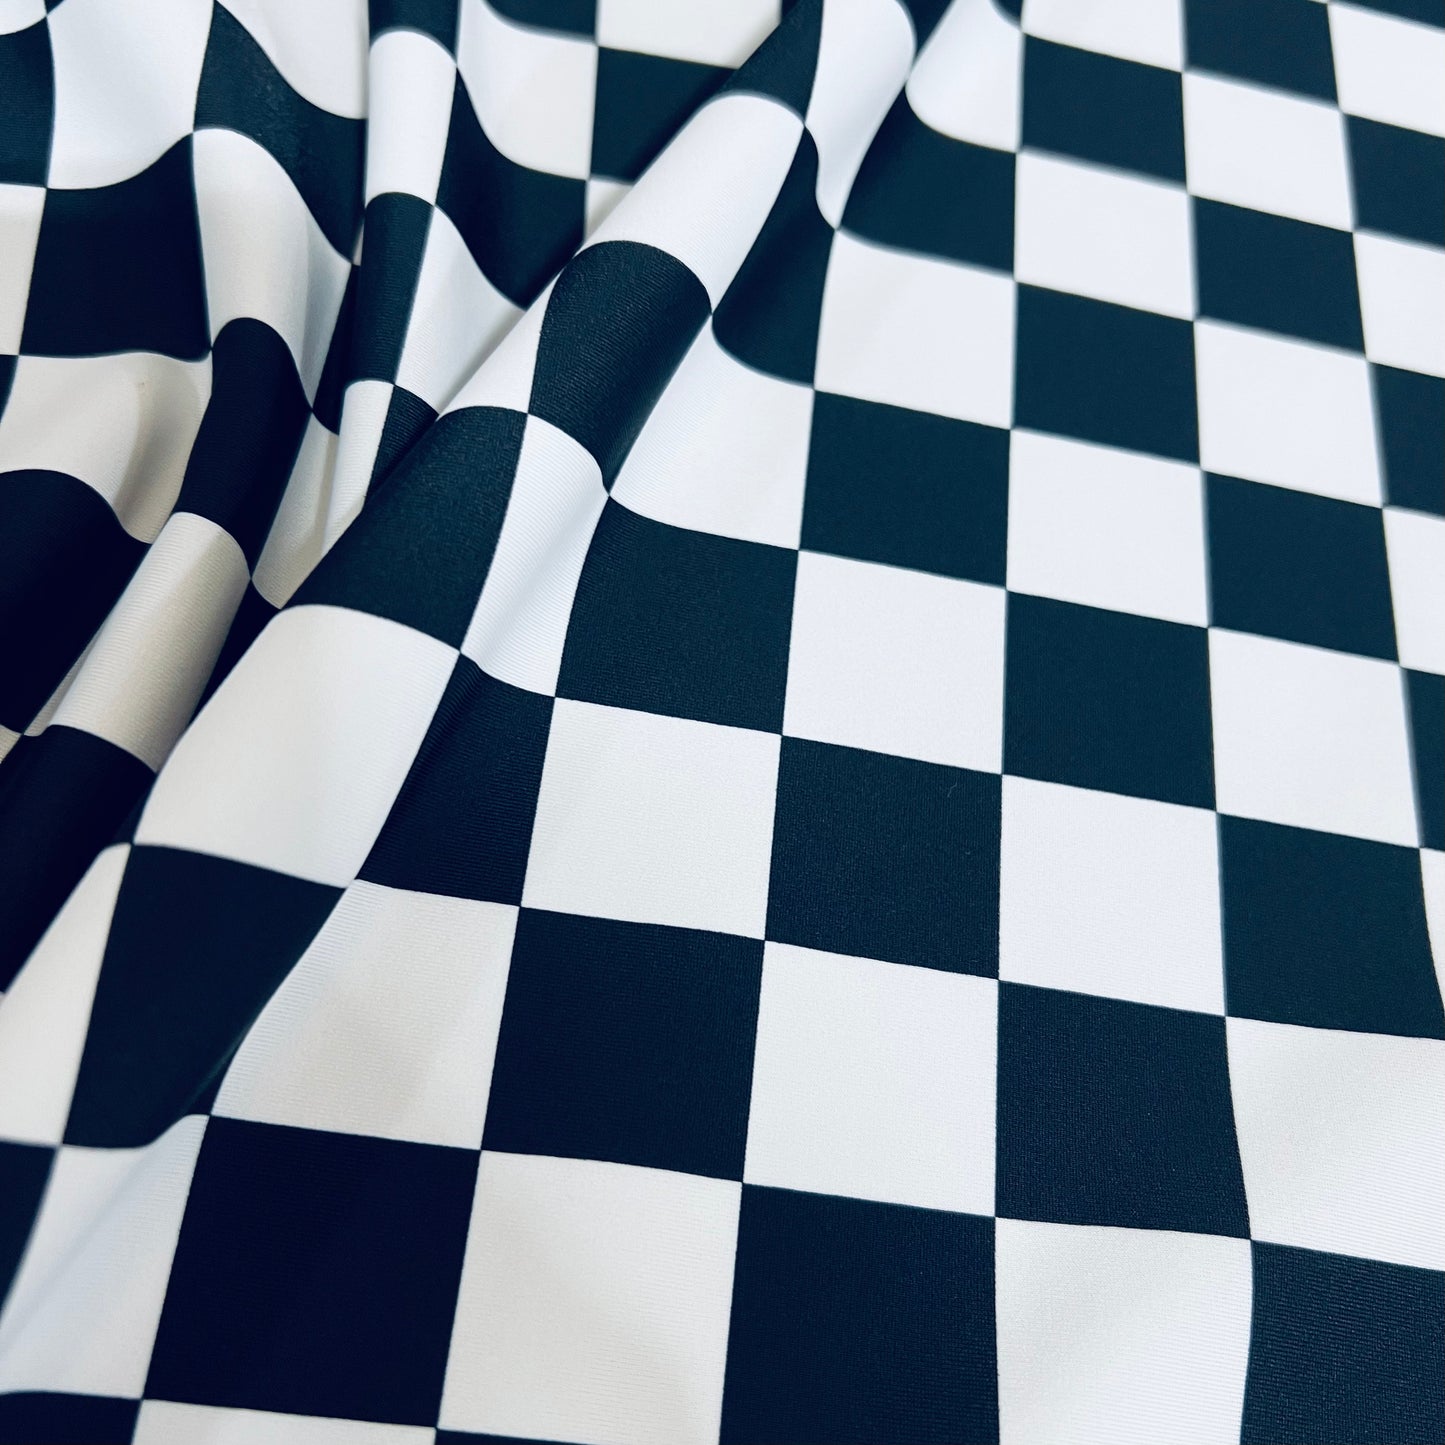 UV Black and White Checkered